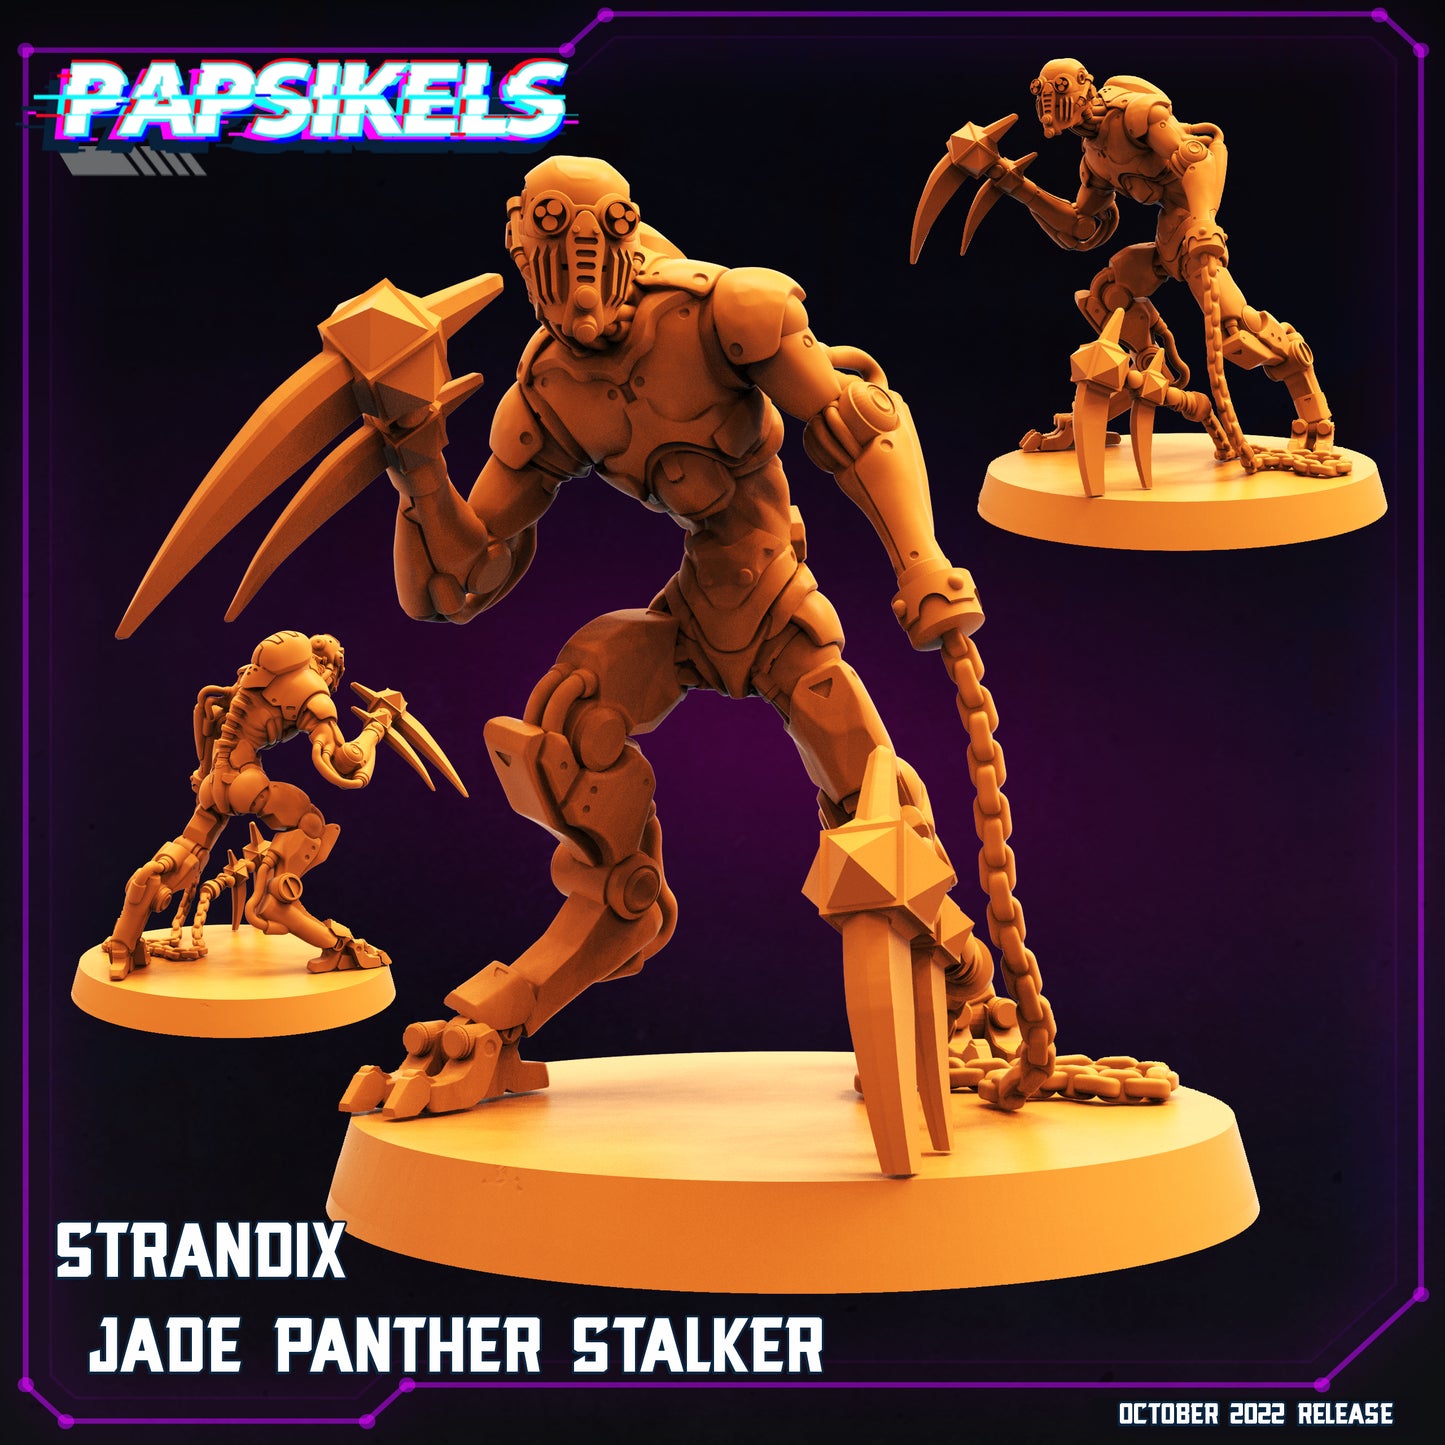 Jade Panther Stalker